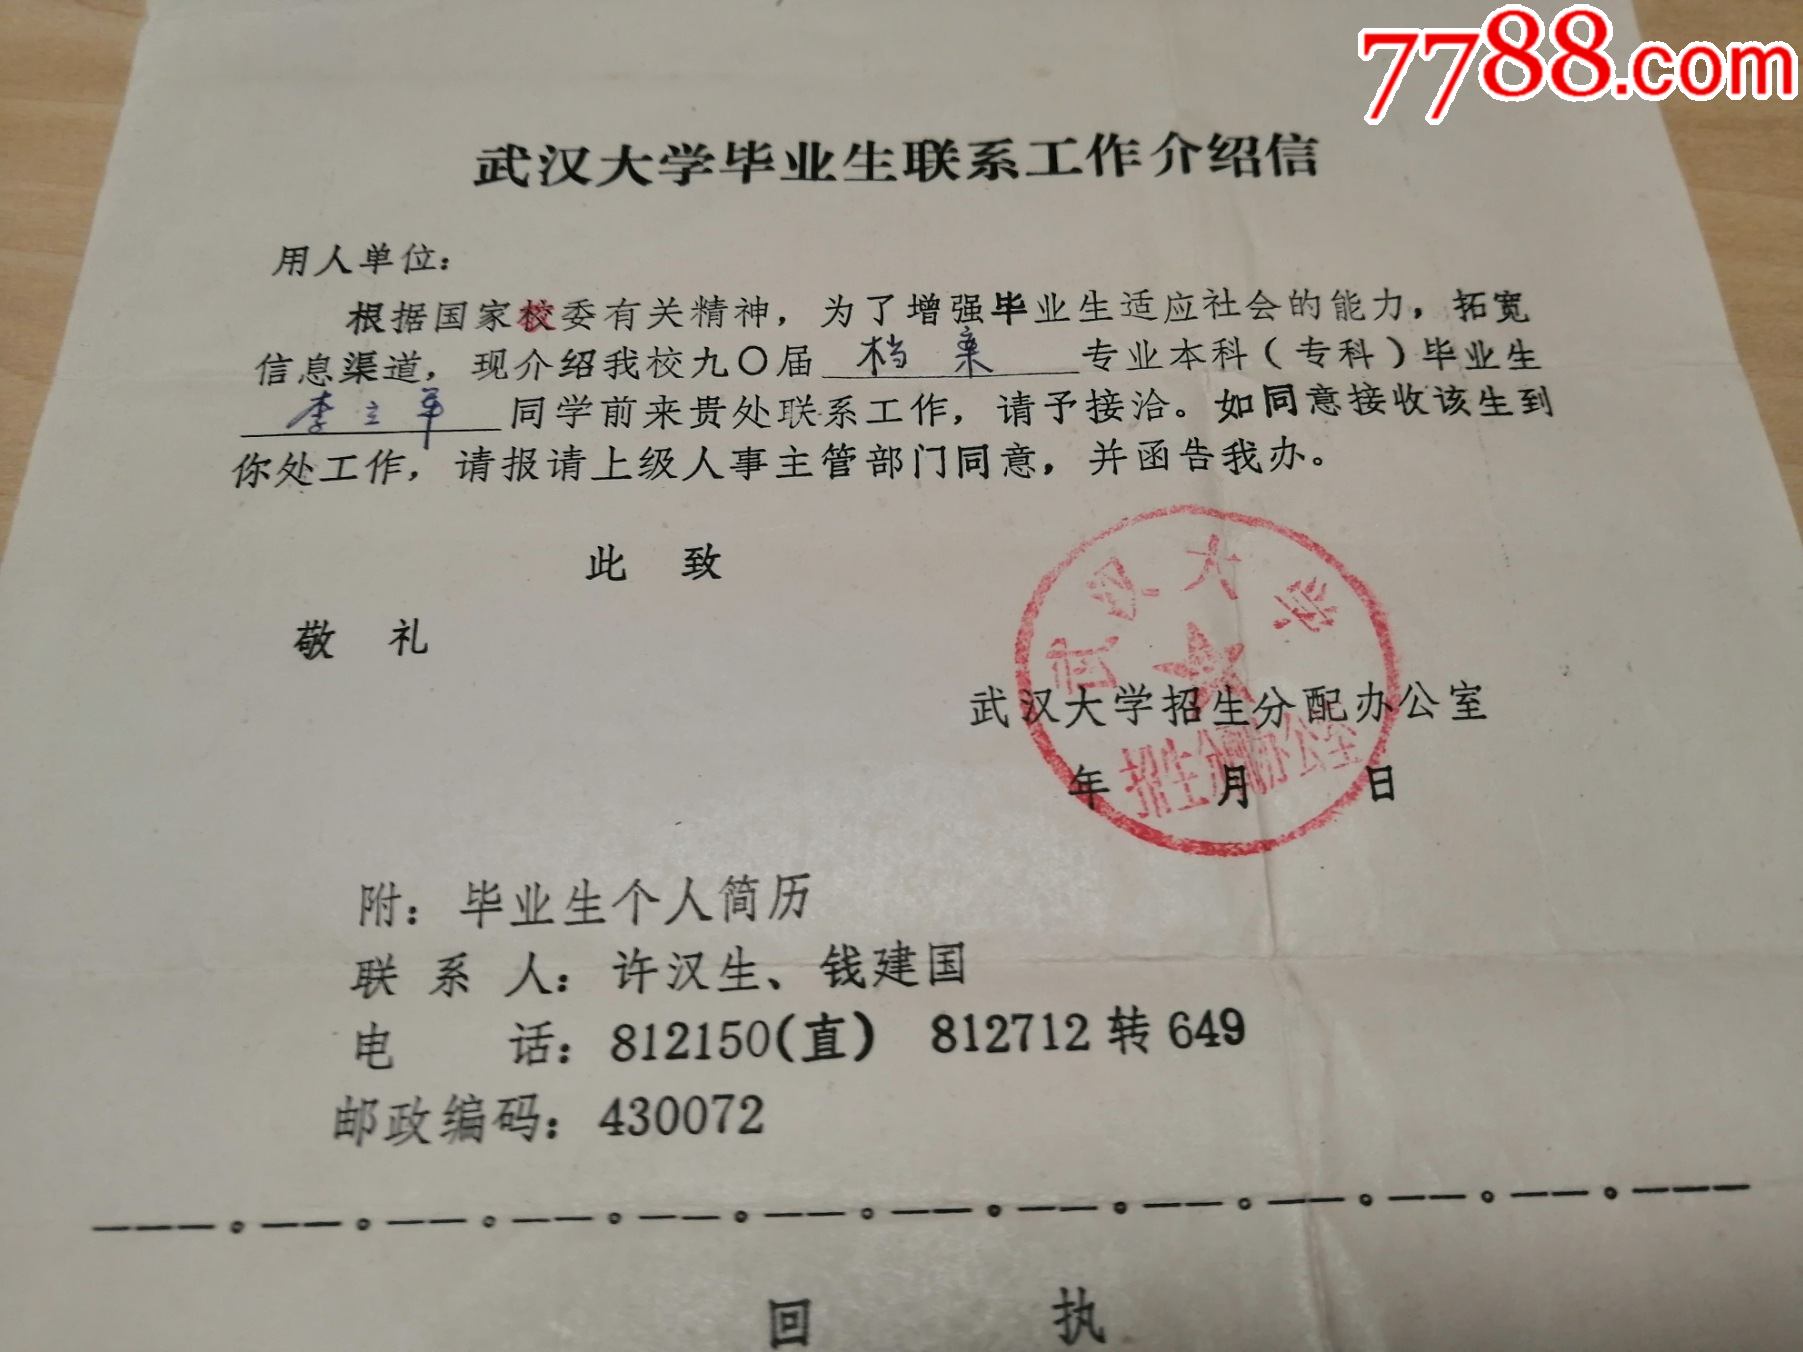 90年代初期,少见的,1990届武汉大学毕业生联系工作介绍信,武汉大学